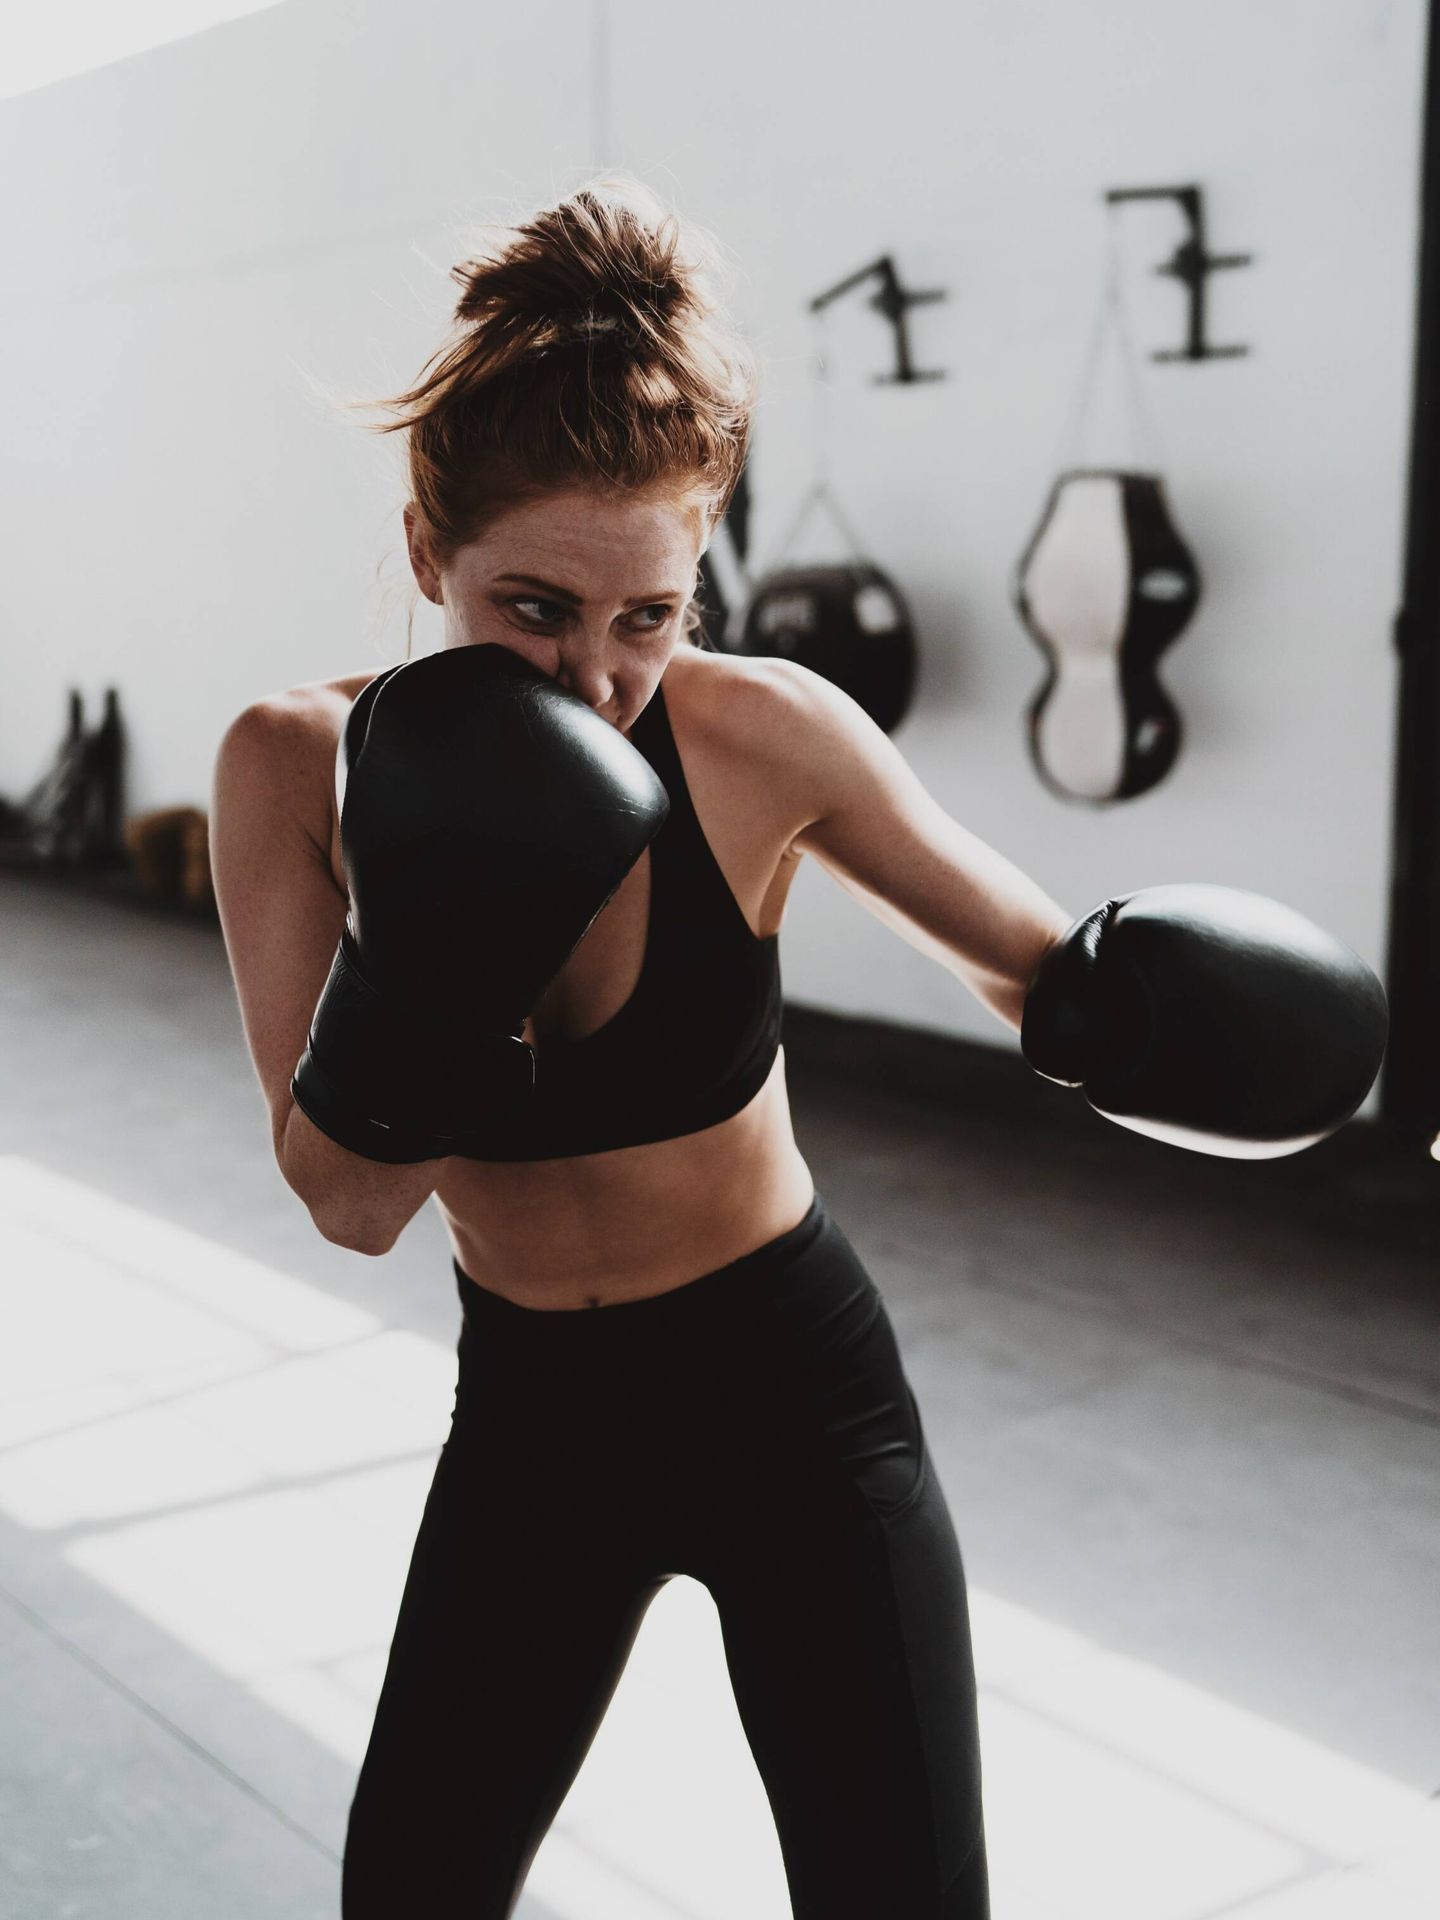 El boxeo permite trabajar la parte superior del cuerpo y el core. (Unsplash/Logan Weaver)